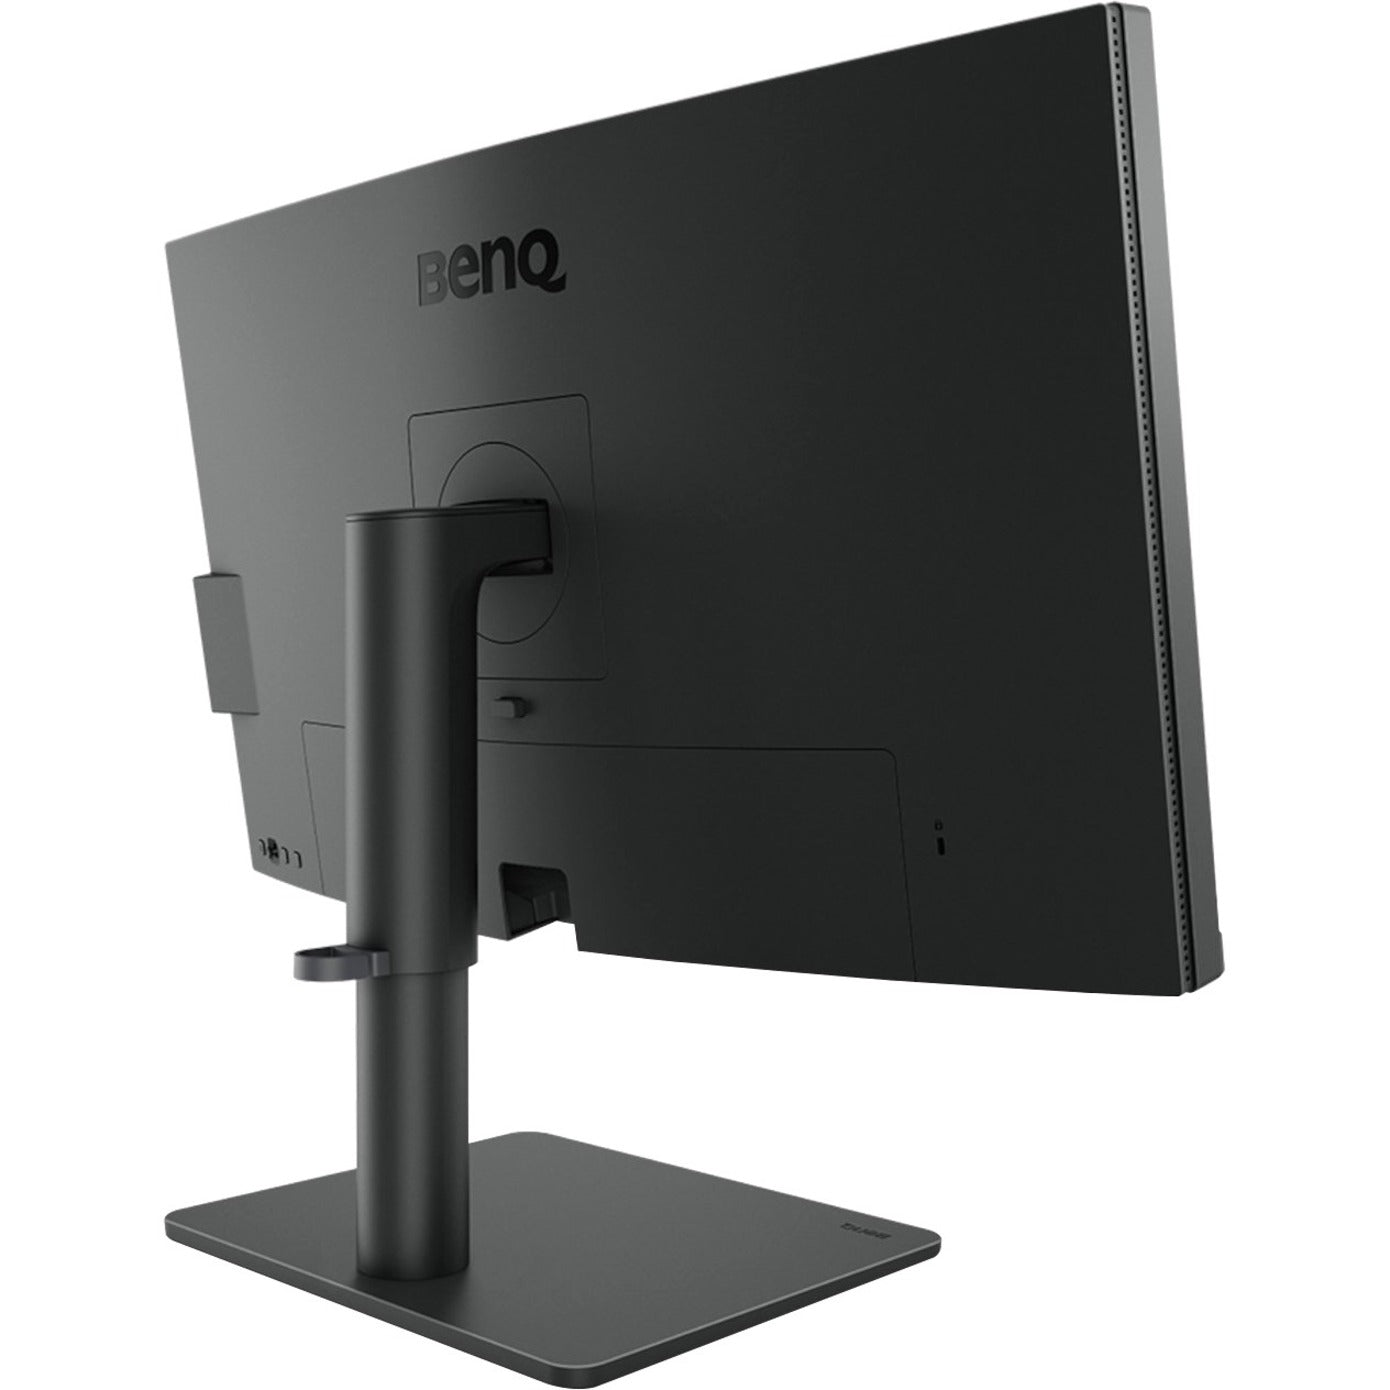 BenQ PD2705U 27" 4K UHD LCD Monitor - 16:9, 99% Rec. 709, 99% sRGB, FreeSync